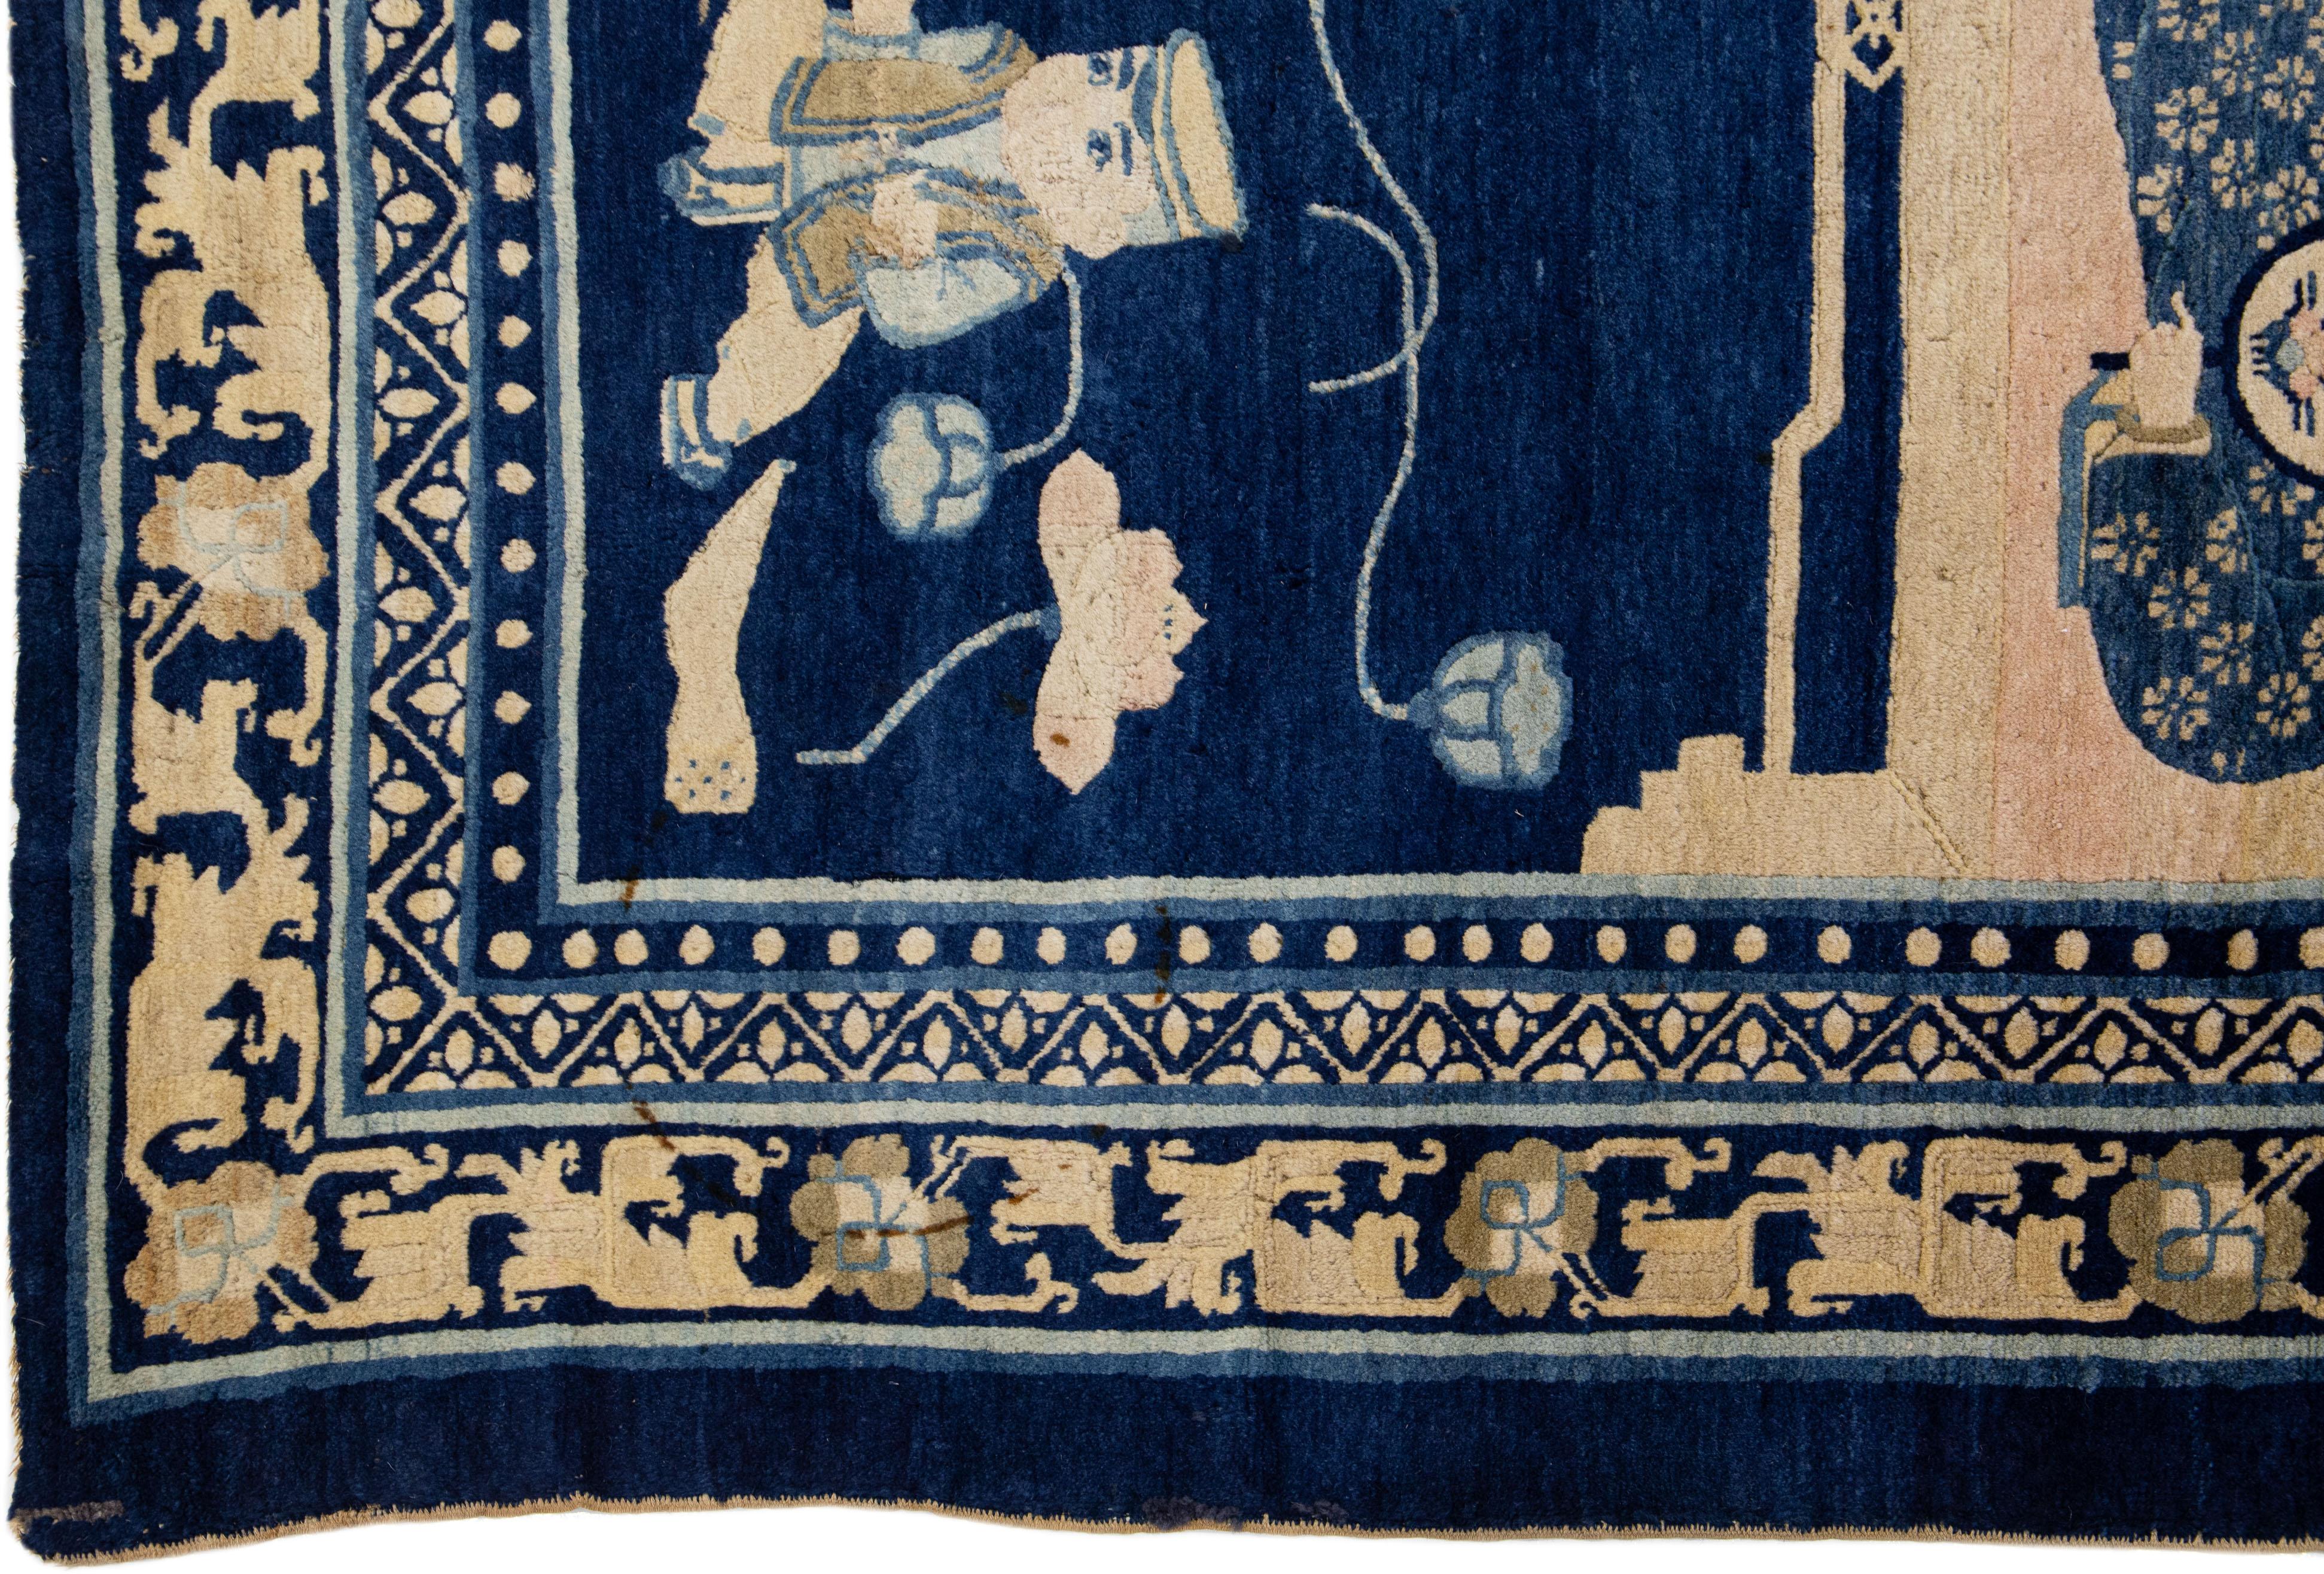 Schöner antiker Art-Deco-Teppich aus handgeknüpfter Wolle mit marineblauem Farbfeld. Dieser chinesische Teppich hat ein wunderschönes traditionelles, malerisches Muster in Beigetönen.

Dieser Teppich misst: 6'3